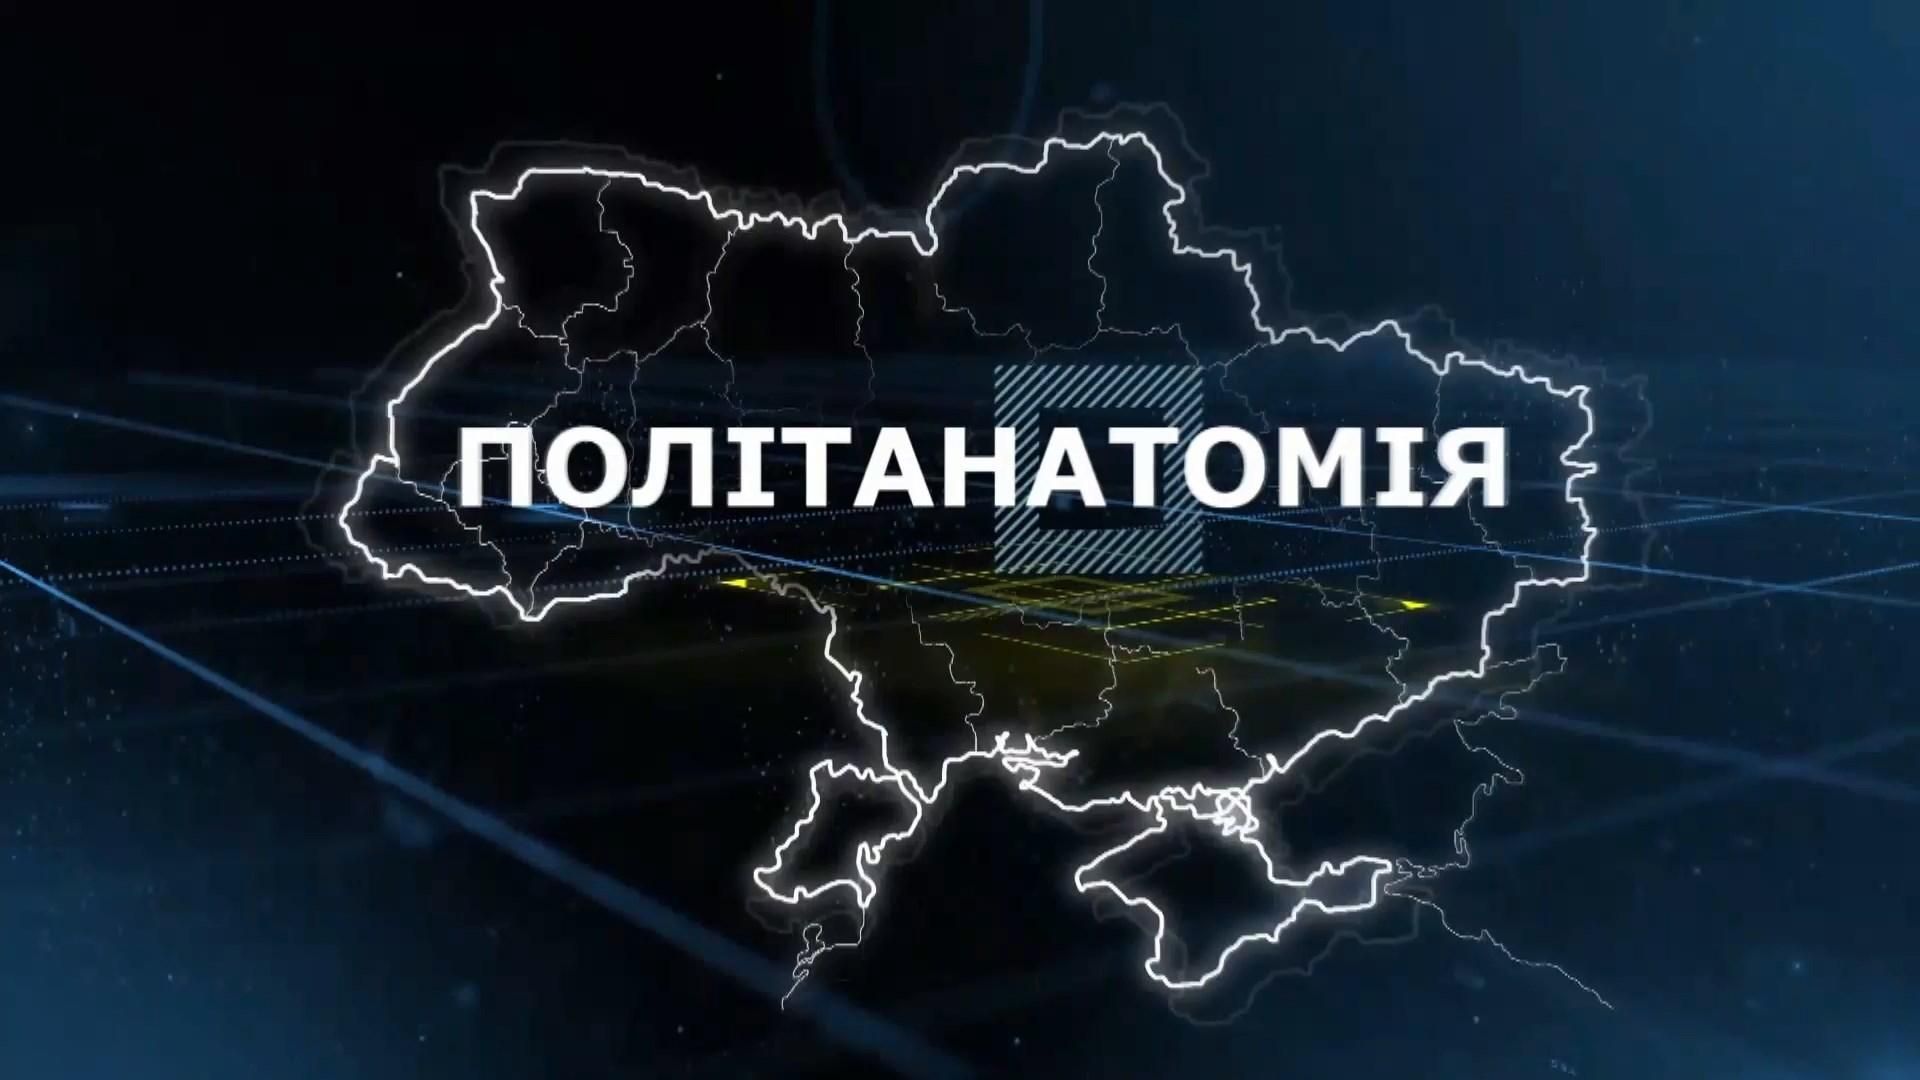 ПАРЄ та конфлікт між Зеленським і Клімкіним: про найголовніше у ток-шоу "Політанатомія"